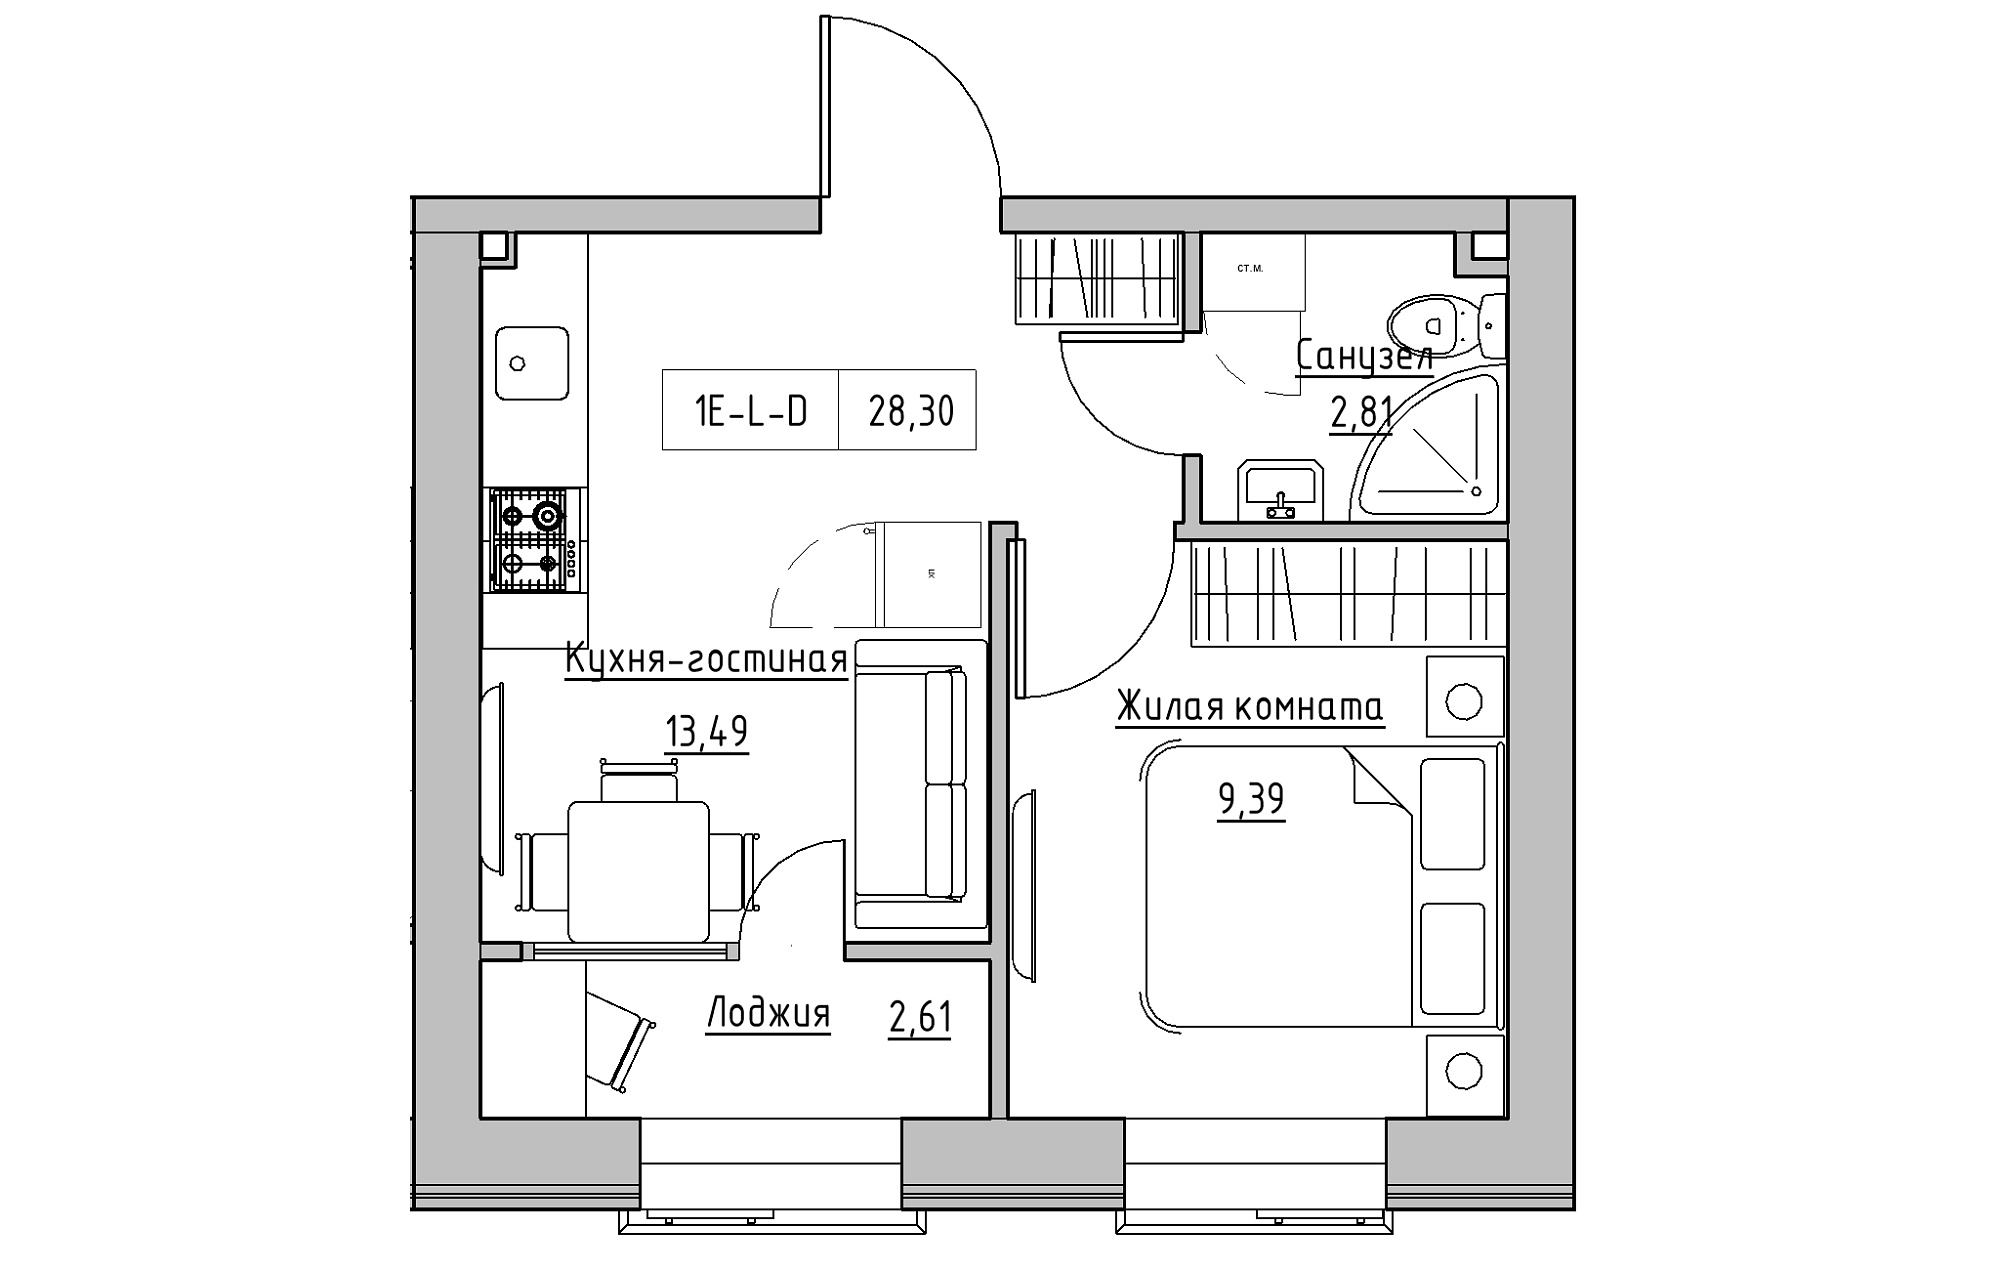 Планування 1-к квартира площею 28.3м2, KS-018-05/0001.